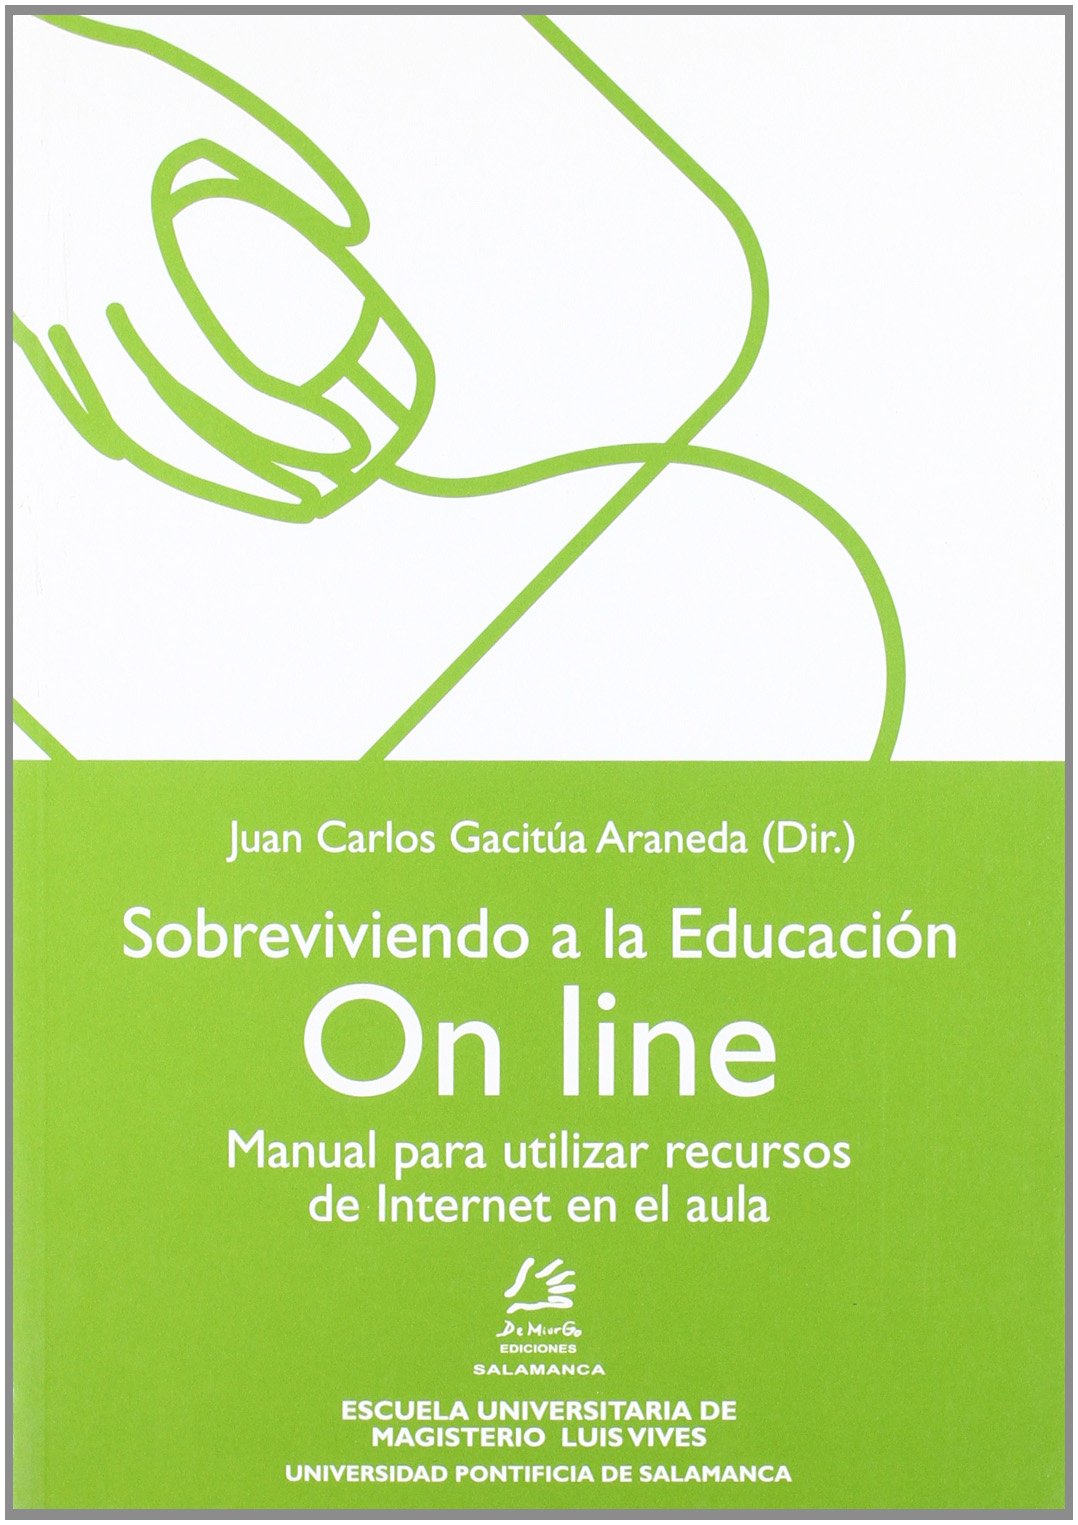 Imagen de portada del libro Sobreviviendo a la educación on line